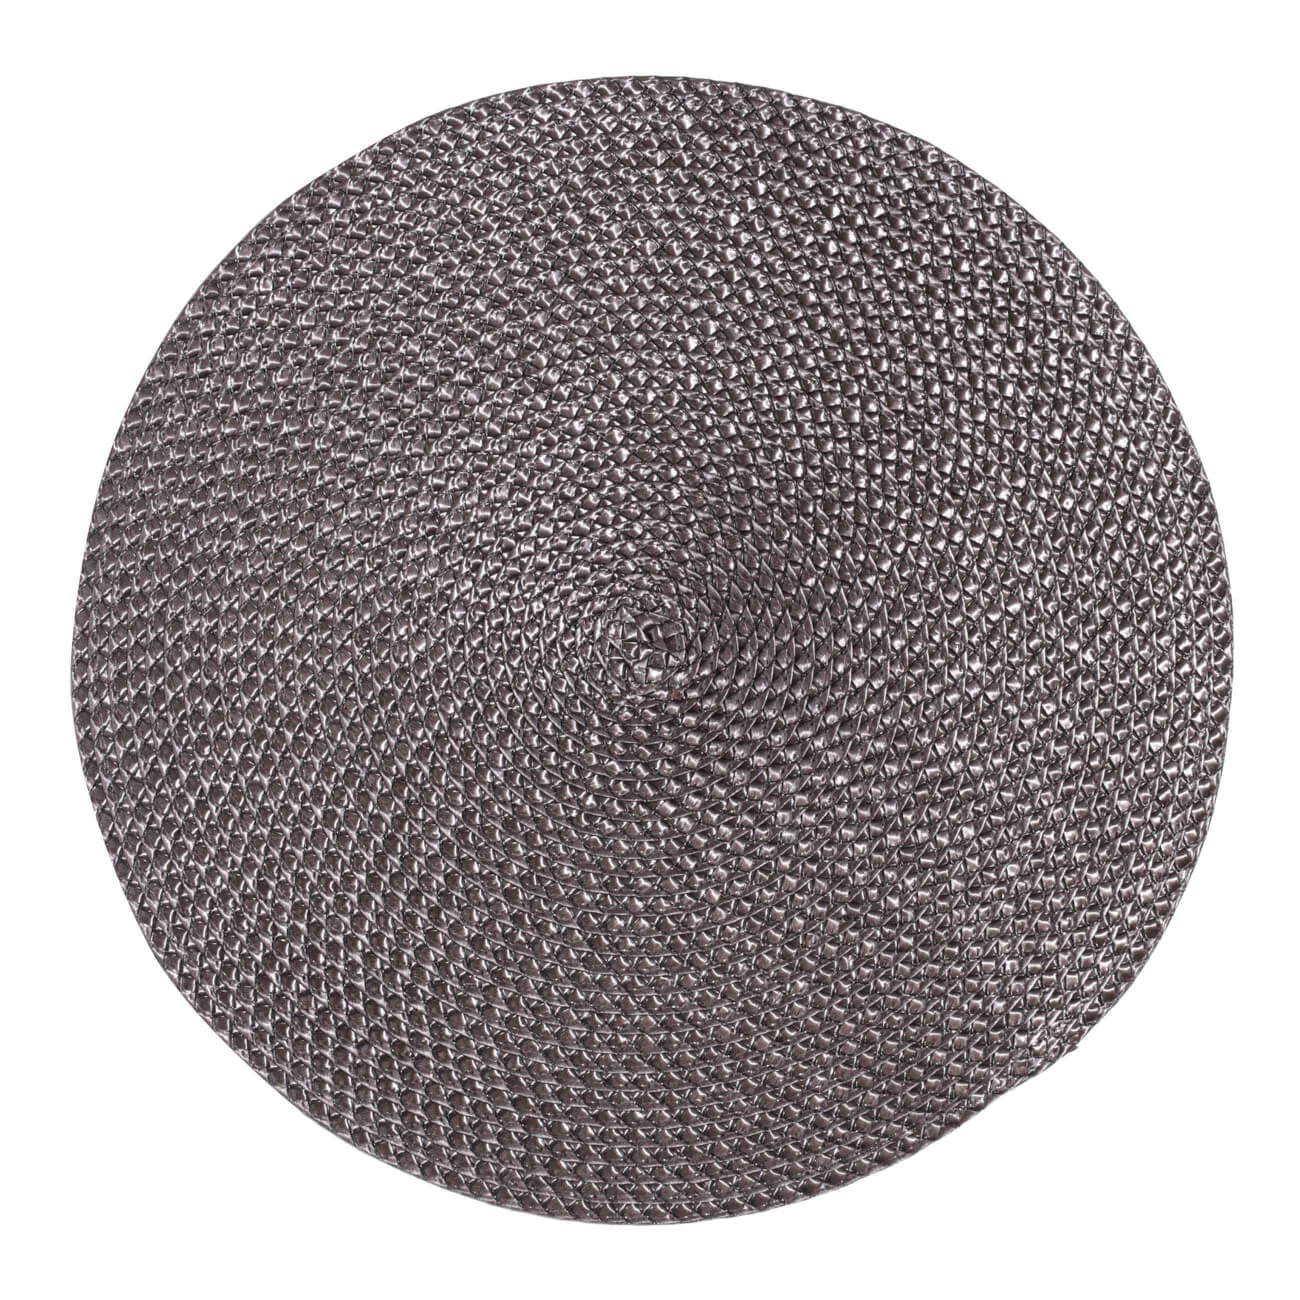 Салфетка под приборы, 38 см, полипропилен/ПЭТ, круглая, коричневая, Circle braid губчатая салфетка york